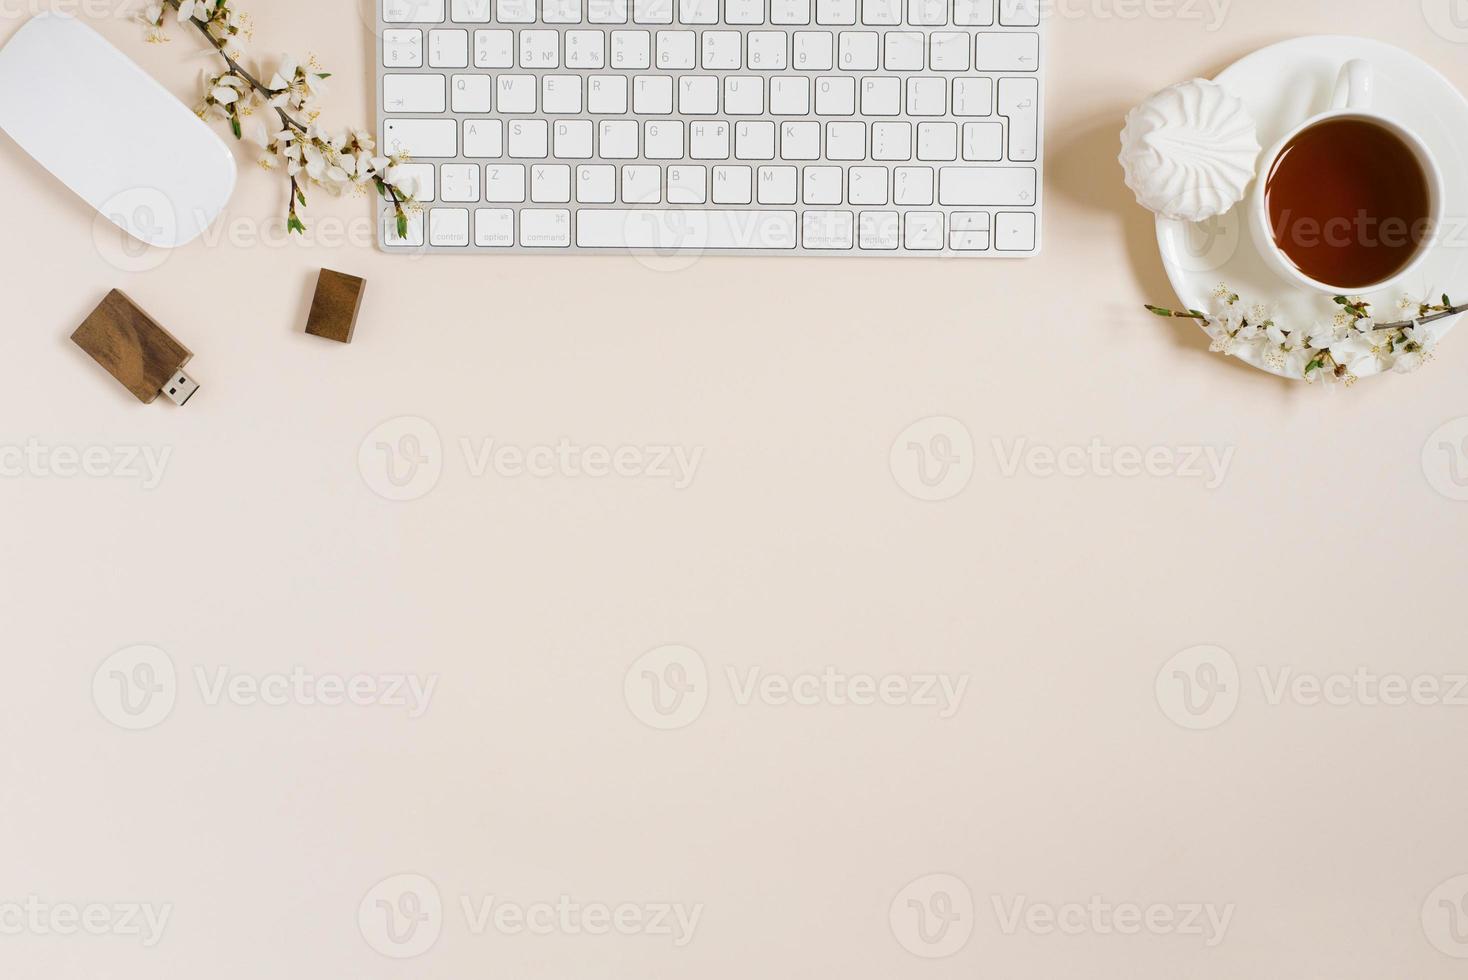 elegant vlak leggen voor een vrouw mode blogger. werkplaats van een freelancer of kantoor arbeider, een laptop, een kop van zwart thee, een heemst, een appel bloemen. kopiëren ruimte, top visie foto